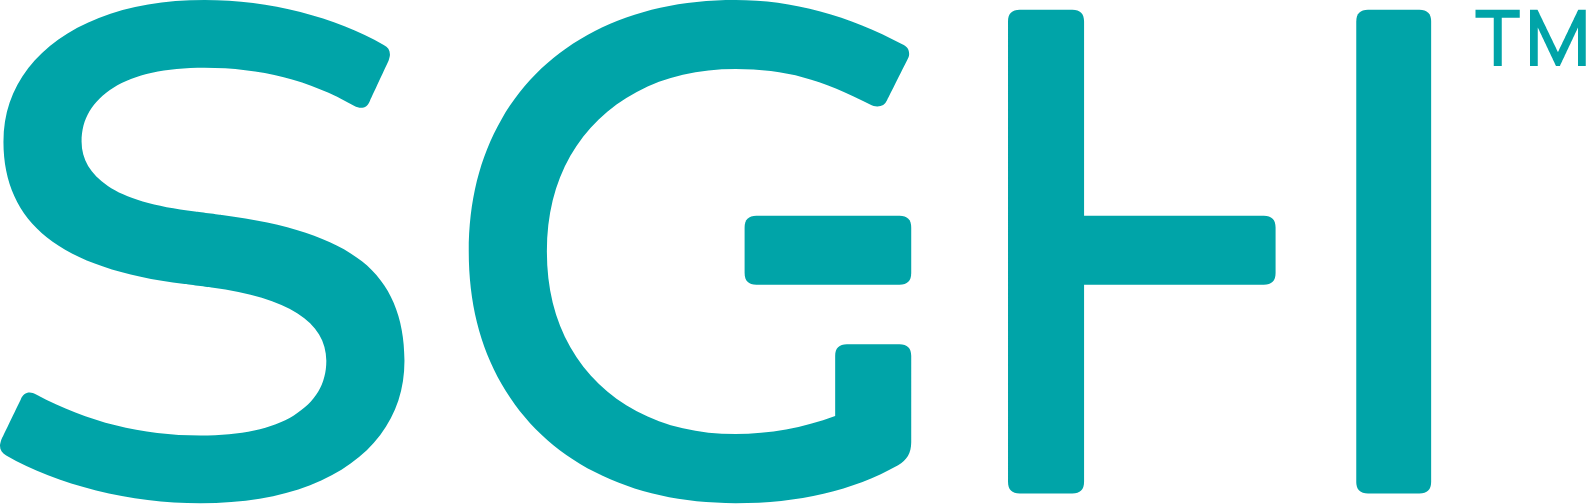 SMART Global Holdings logo large (transparent PNG)